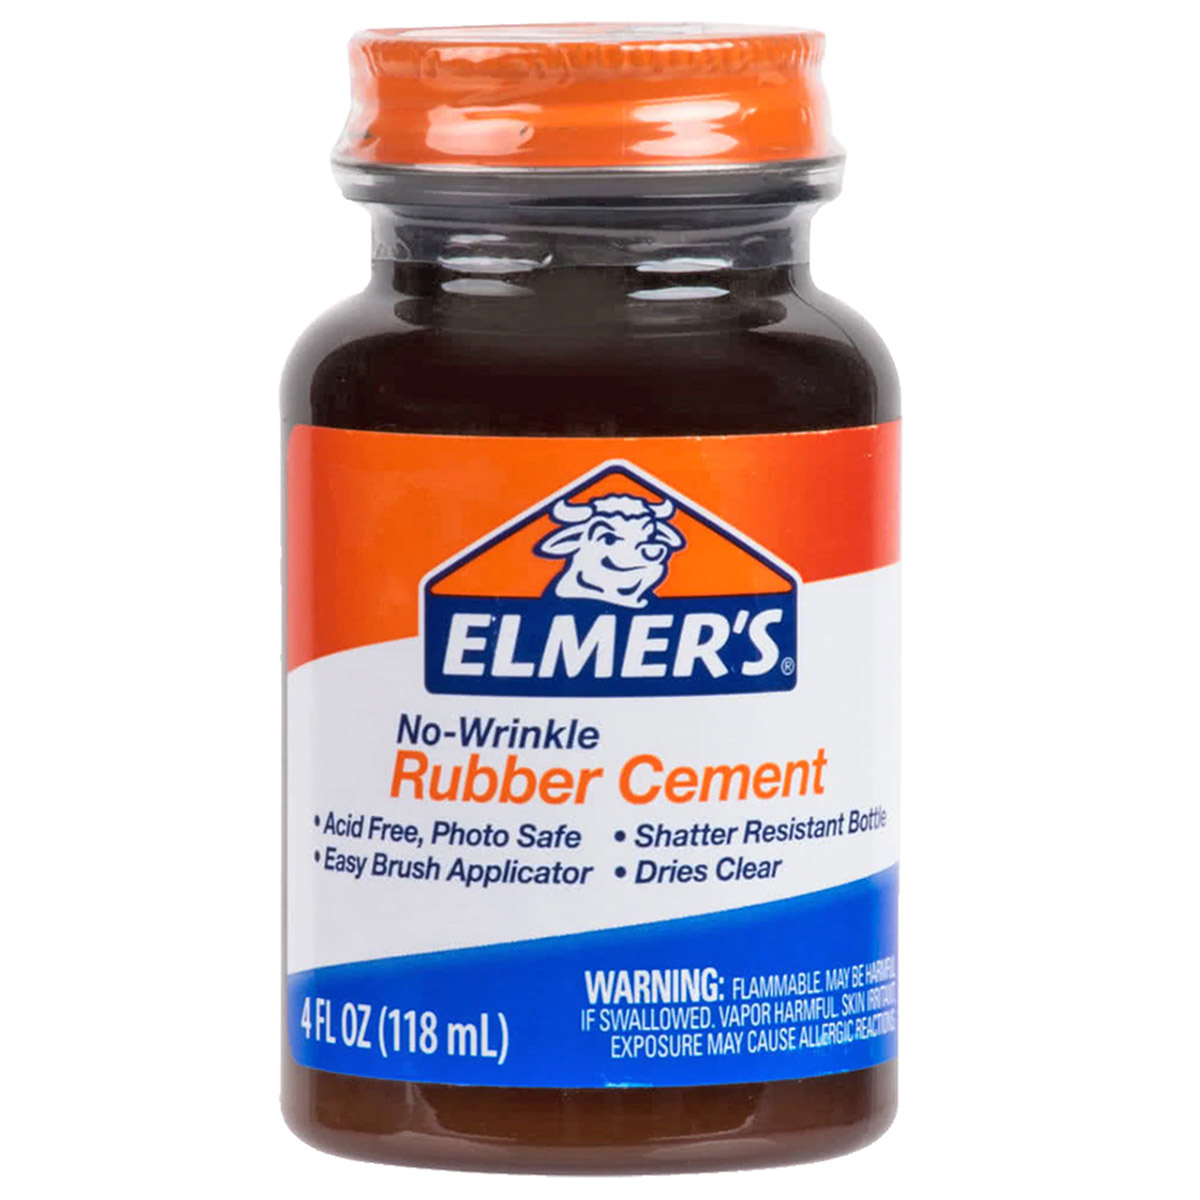 Elmerâs Rubber Cement | The Ink Stone